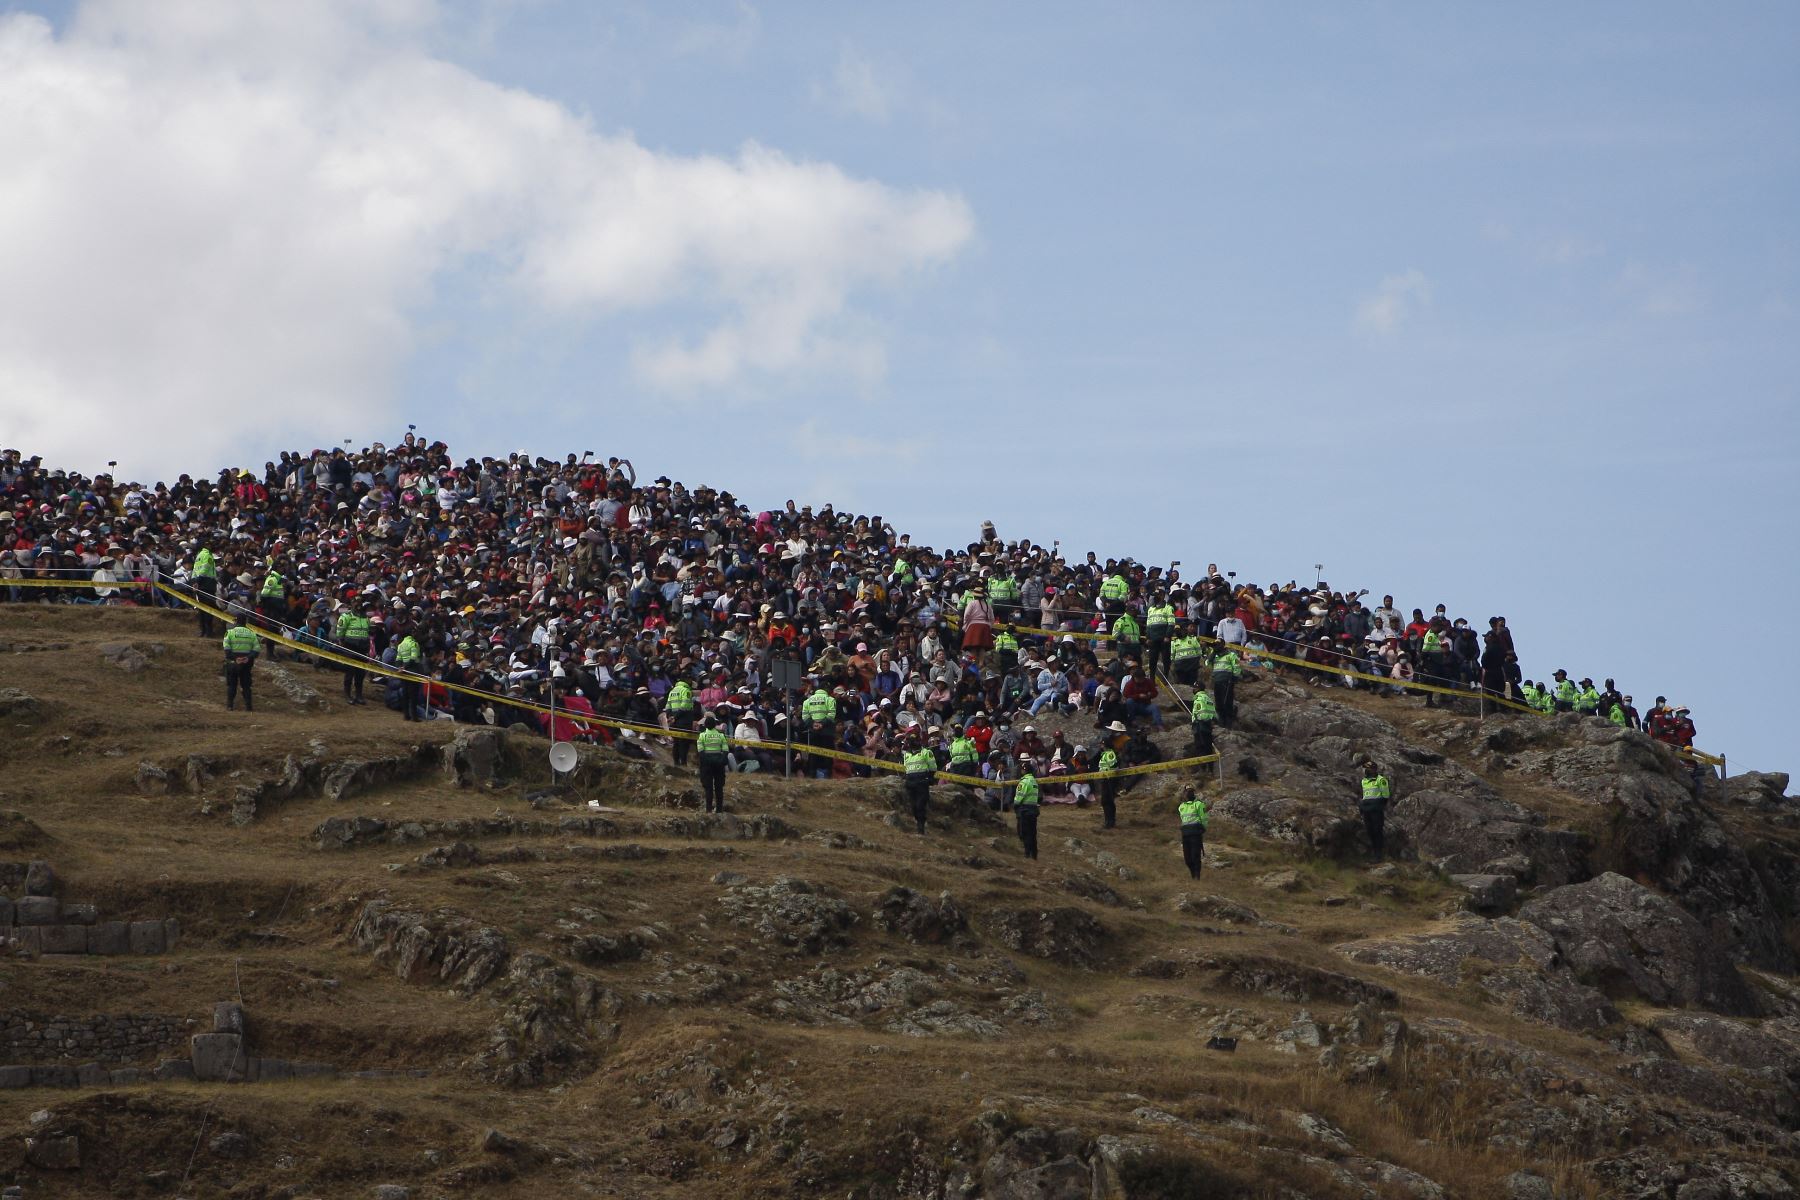 La escenificación del Inti Raymi con público al 100 % en sus tres escenarios habituales: templo Qorikancha, plaza de Armas y la explanada del parque arqueológico de Sacsayhuamán hizo vibrar a los miles de asistentes. Foto: ANDINA/Percy Hurtado Santillán